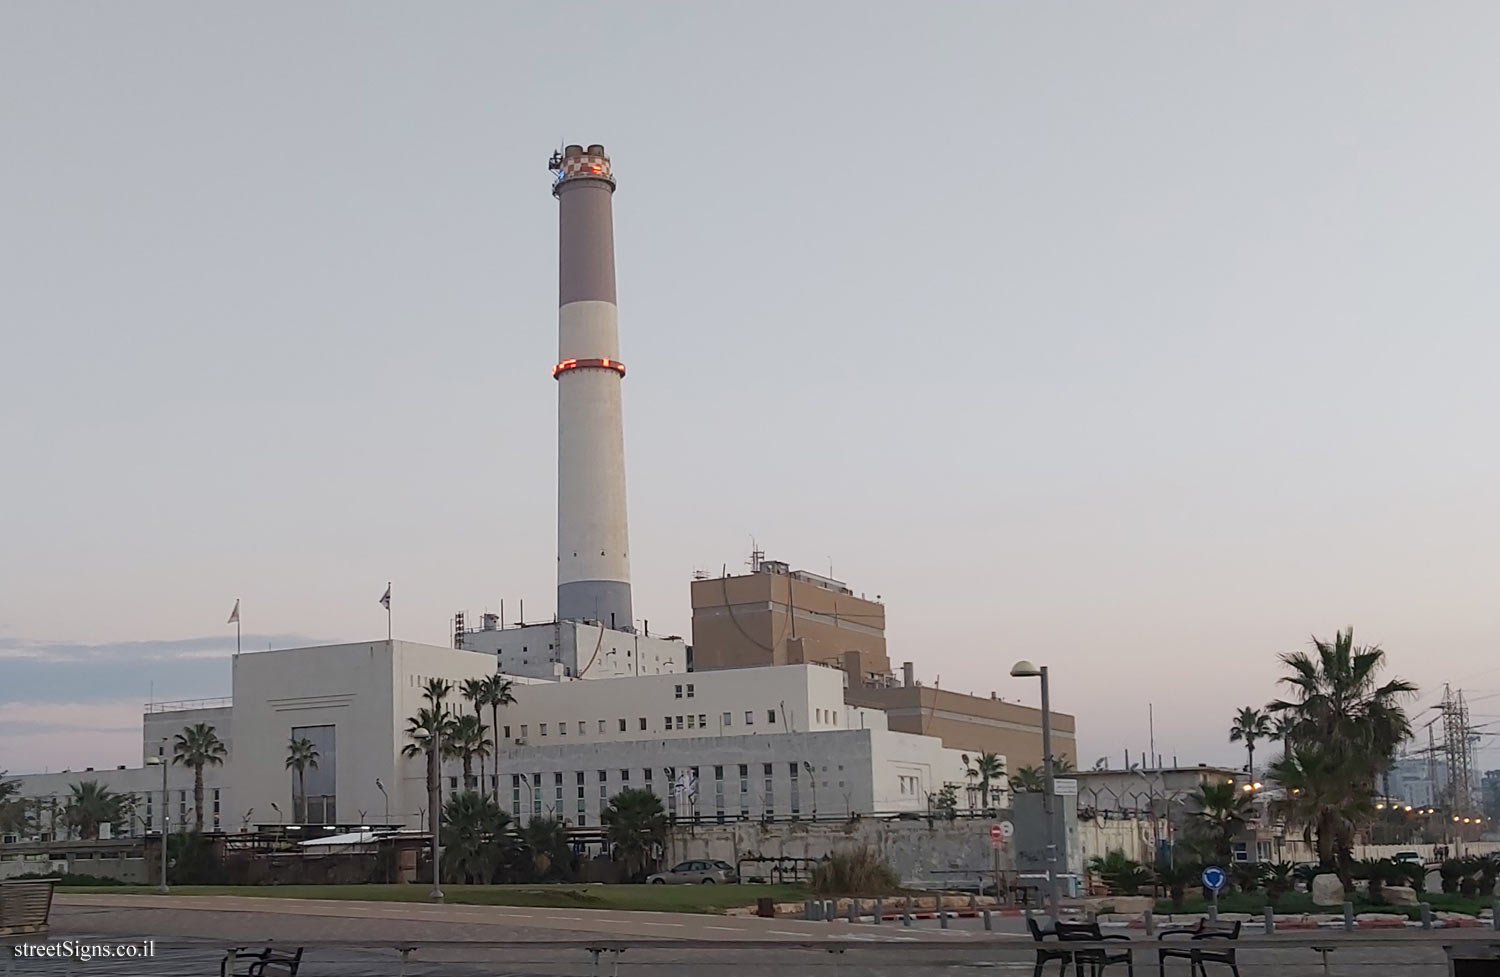 Tel Aviv - Heritage Sites in Israel - Reading A Power Station - Rehavam Ze’evi Gandhi, Tel-Aviv, Israel